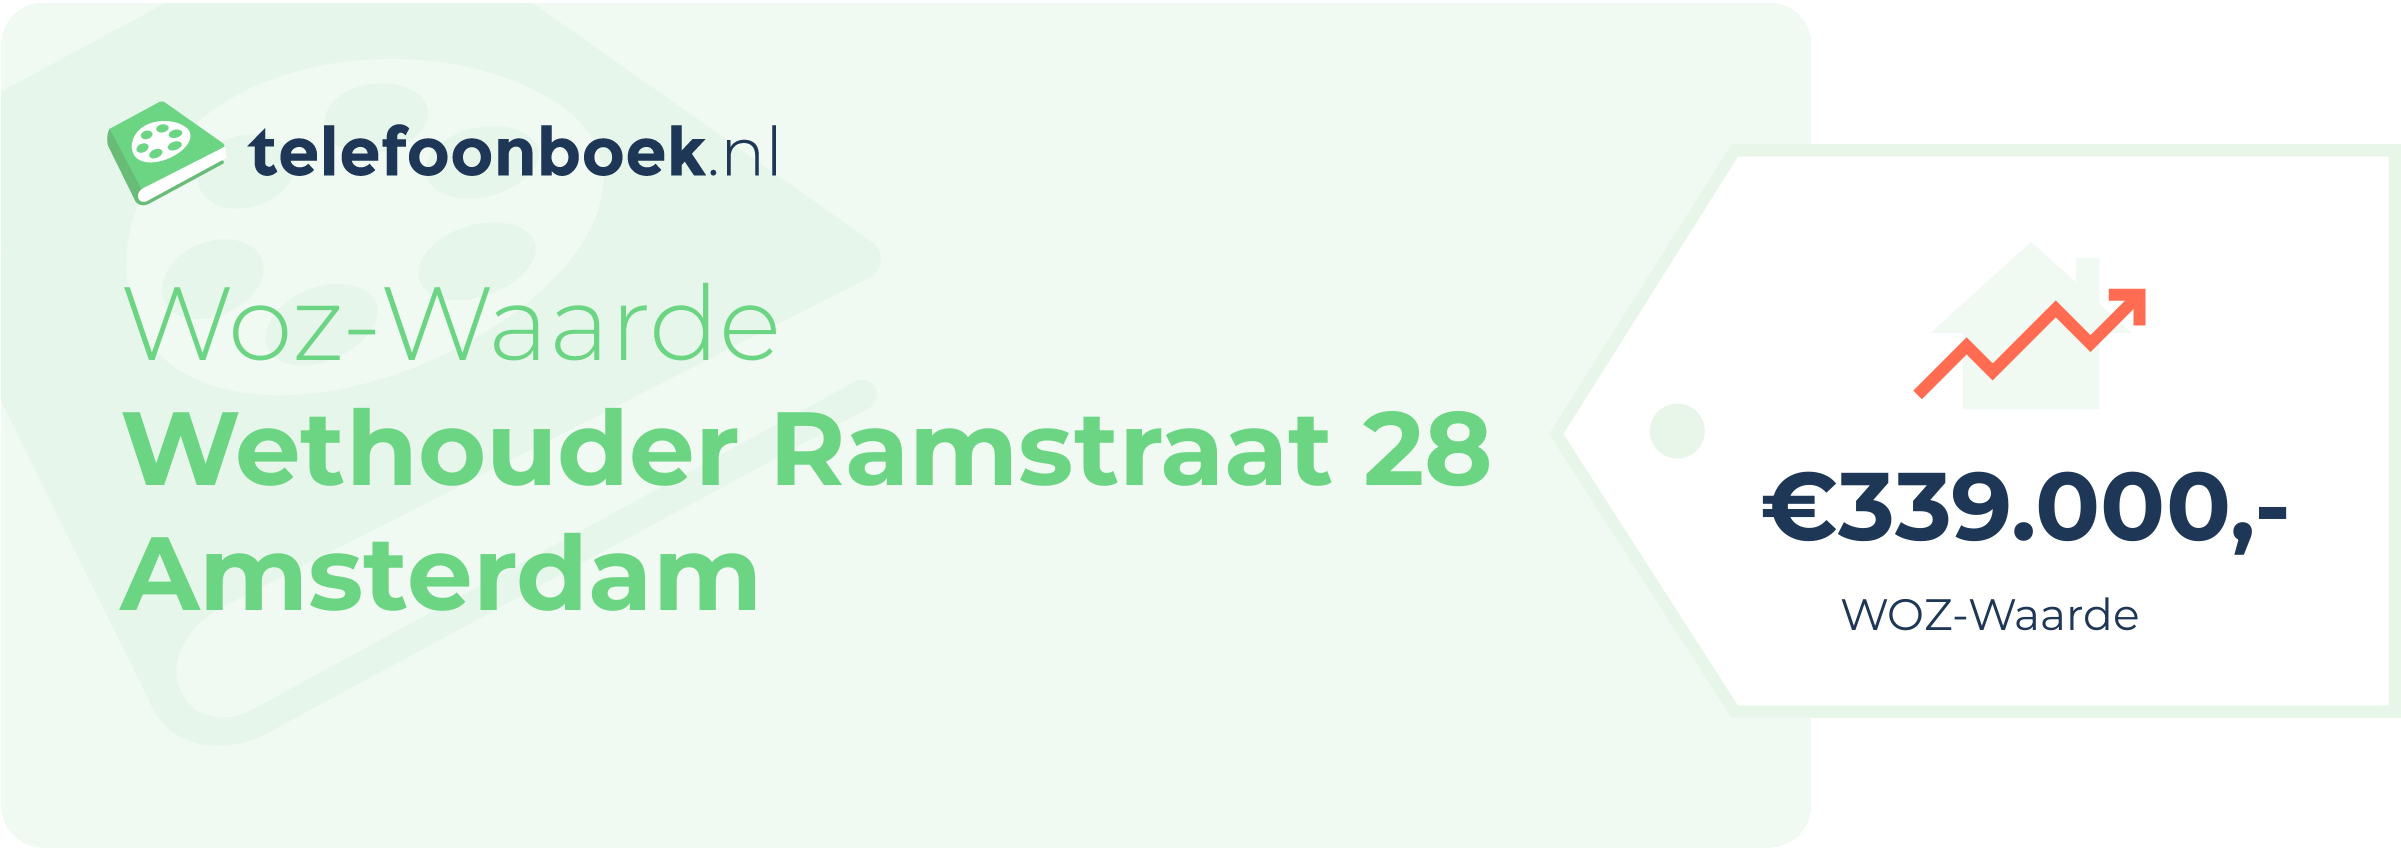 WOZ-waarde Wethouder Ramstraat 28 Amsterdam